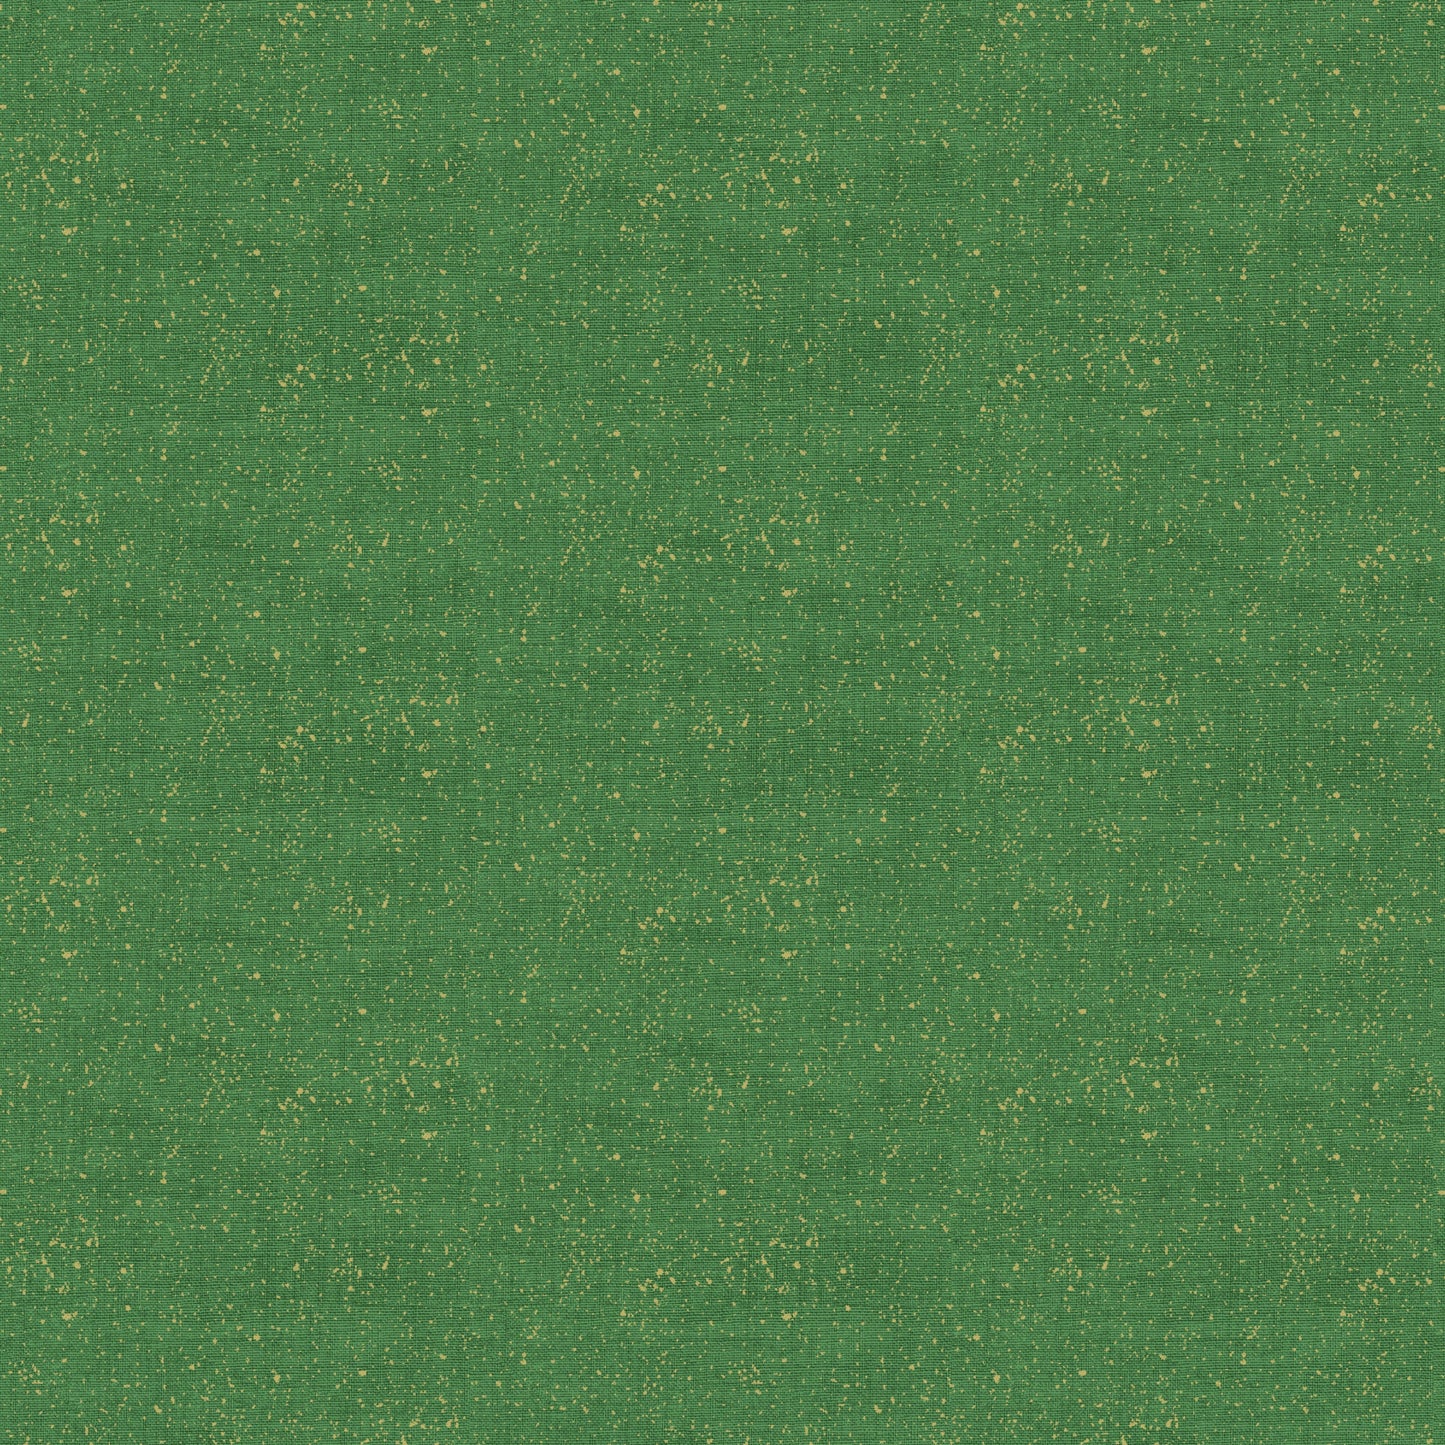 Makower Fabric Metallic Linen Texture Green 2566 G5